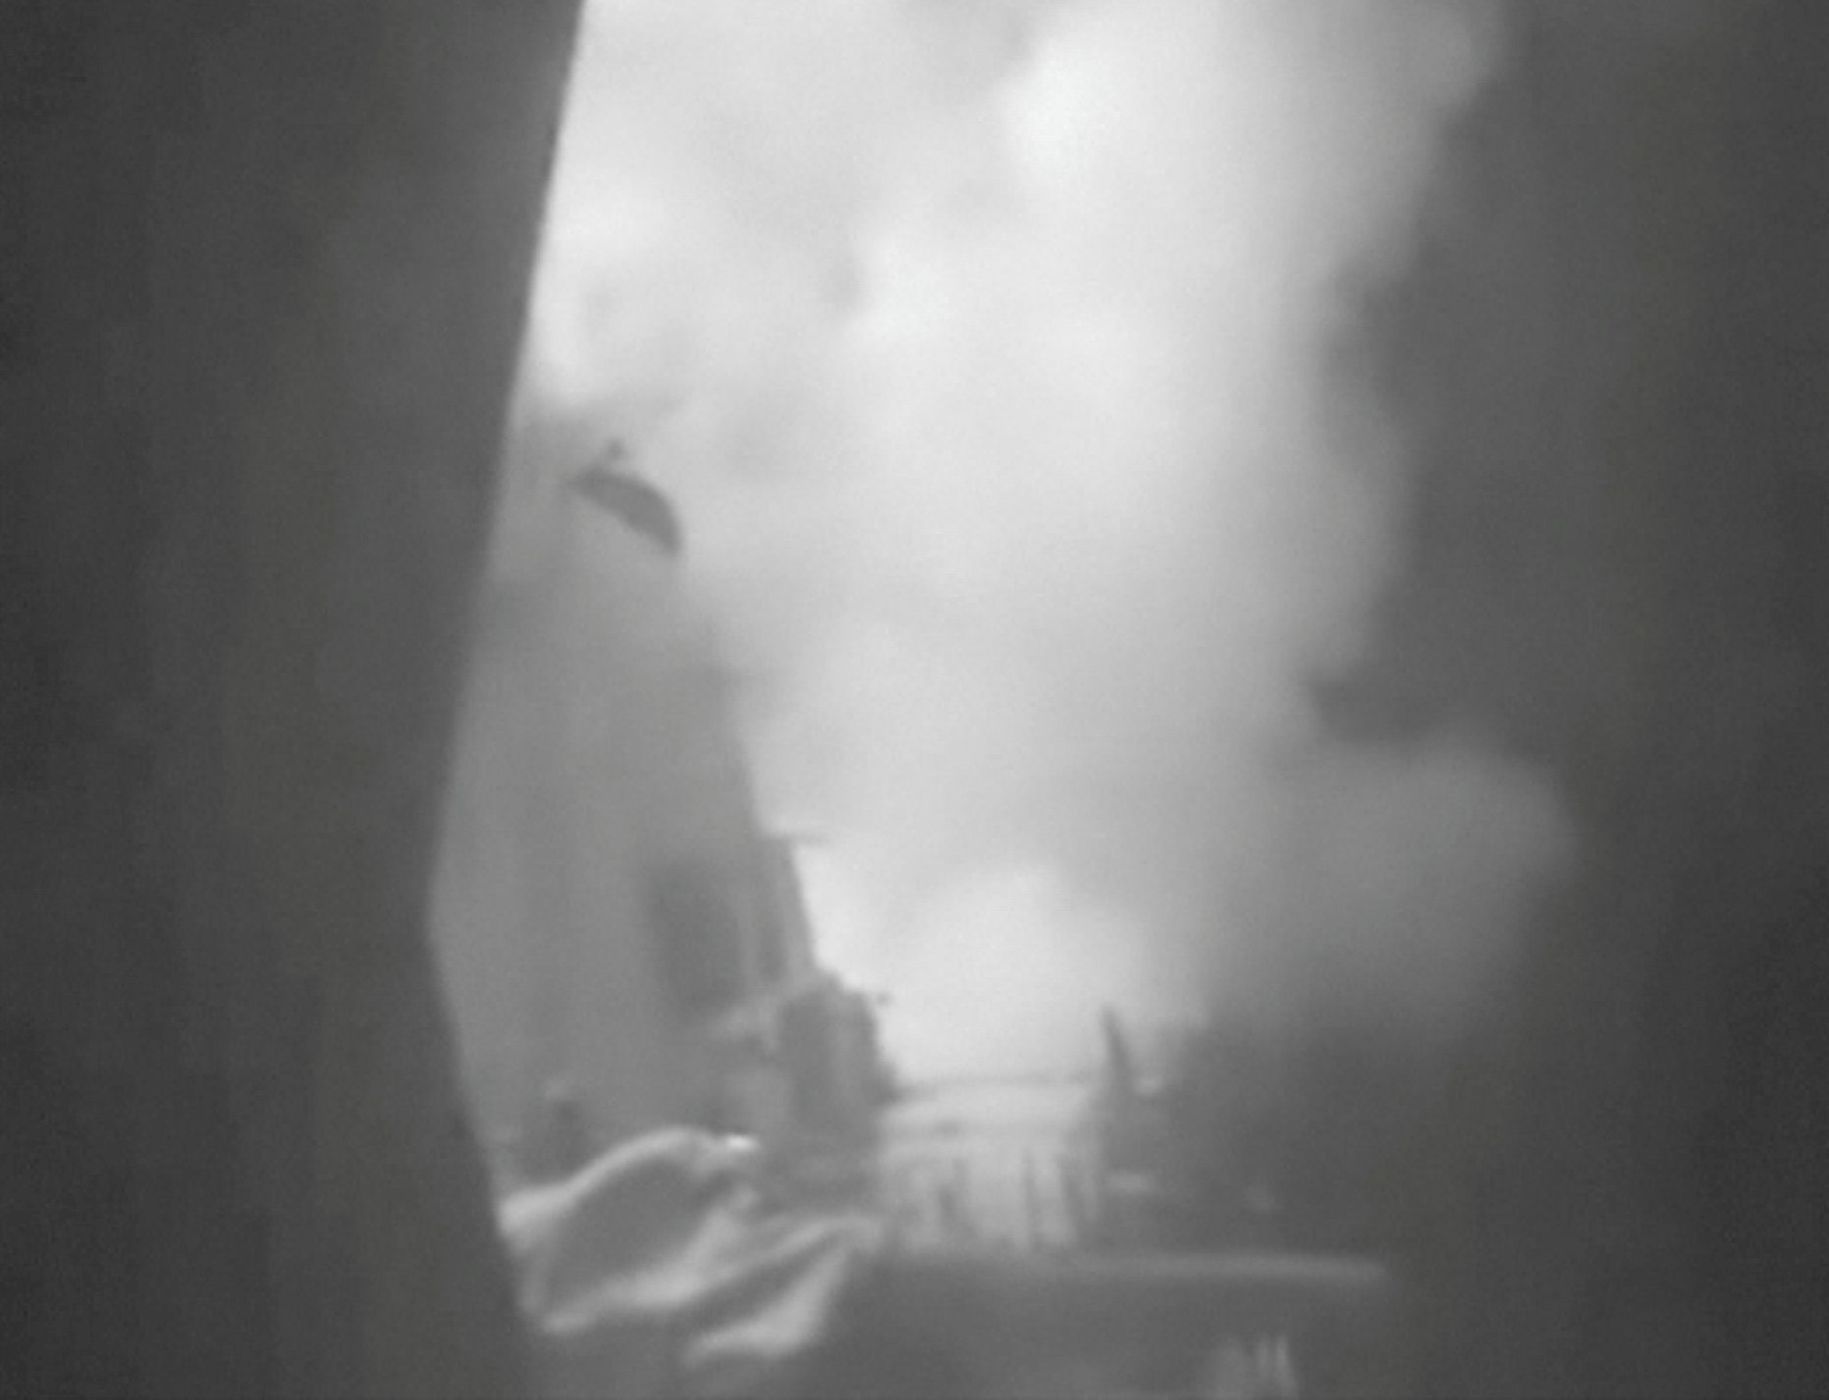 Snímek z paluby lodi USS Nitze. Střela s plochou dráhou letu Tomahawk letí směrem k Jemenu.